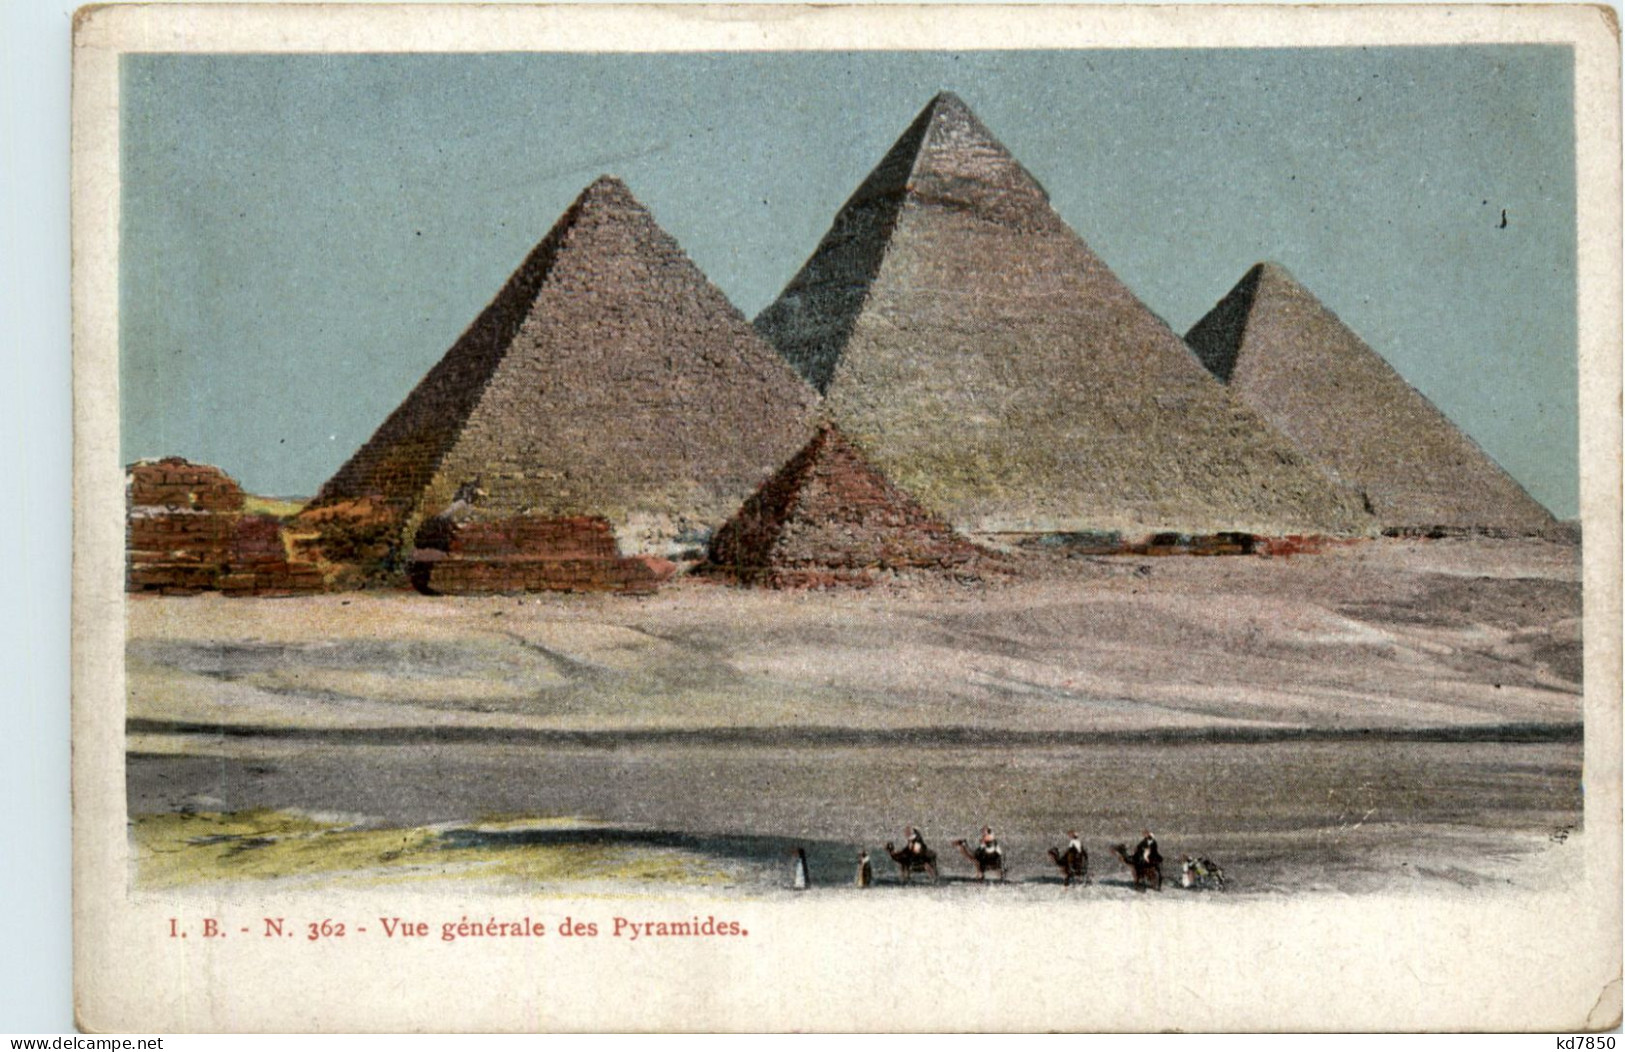 Pyramides - Pyramides